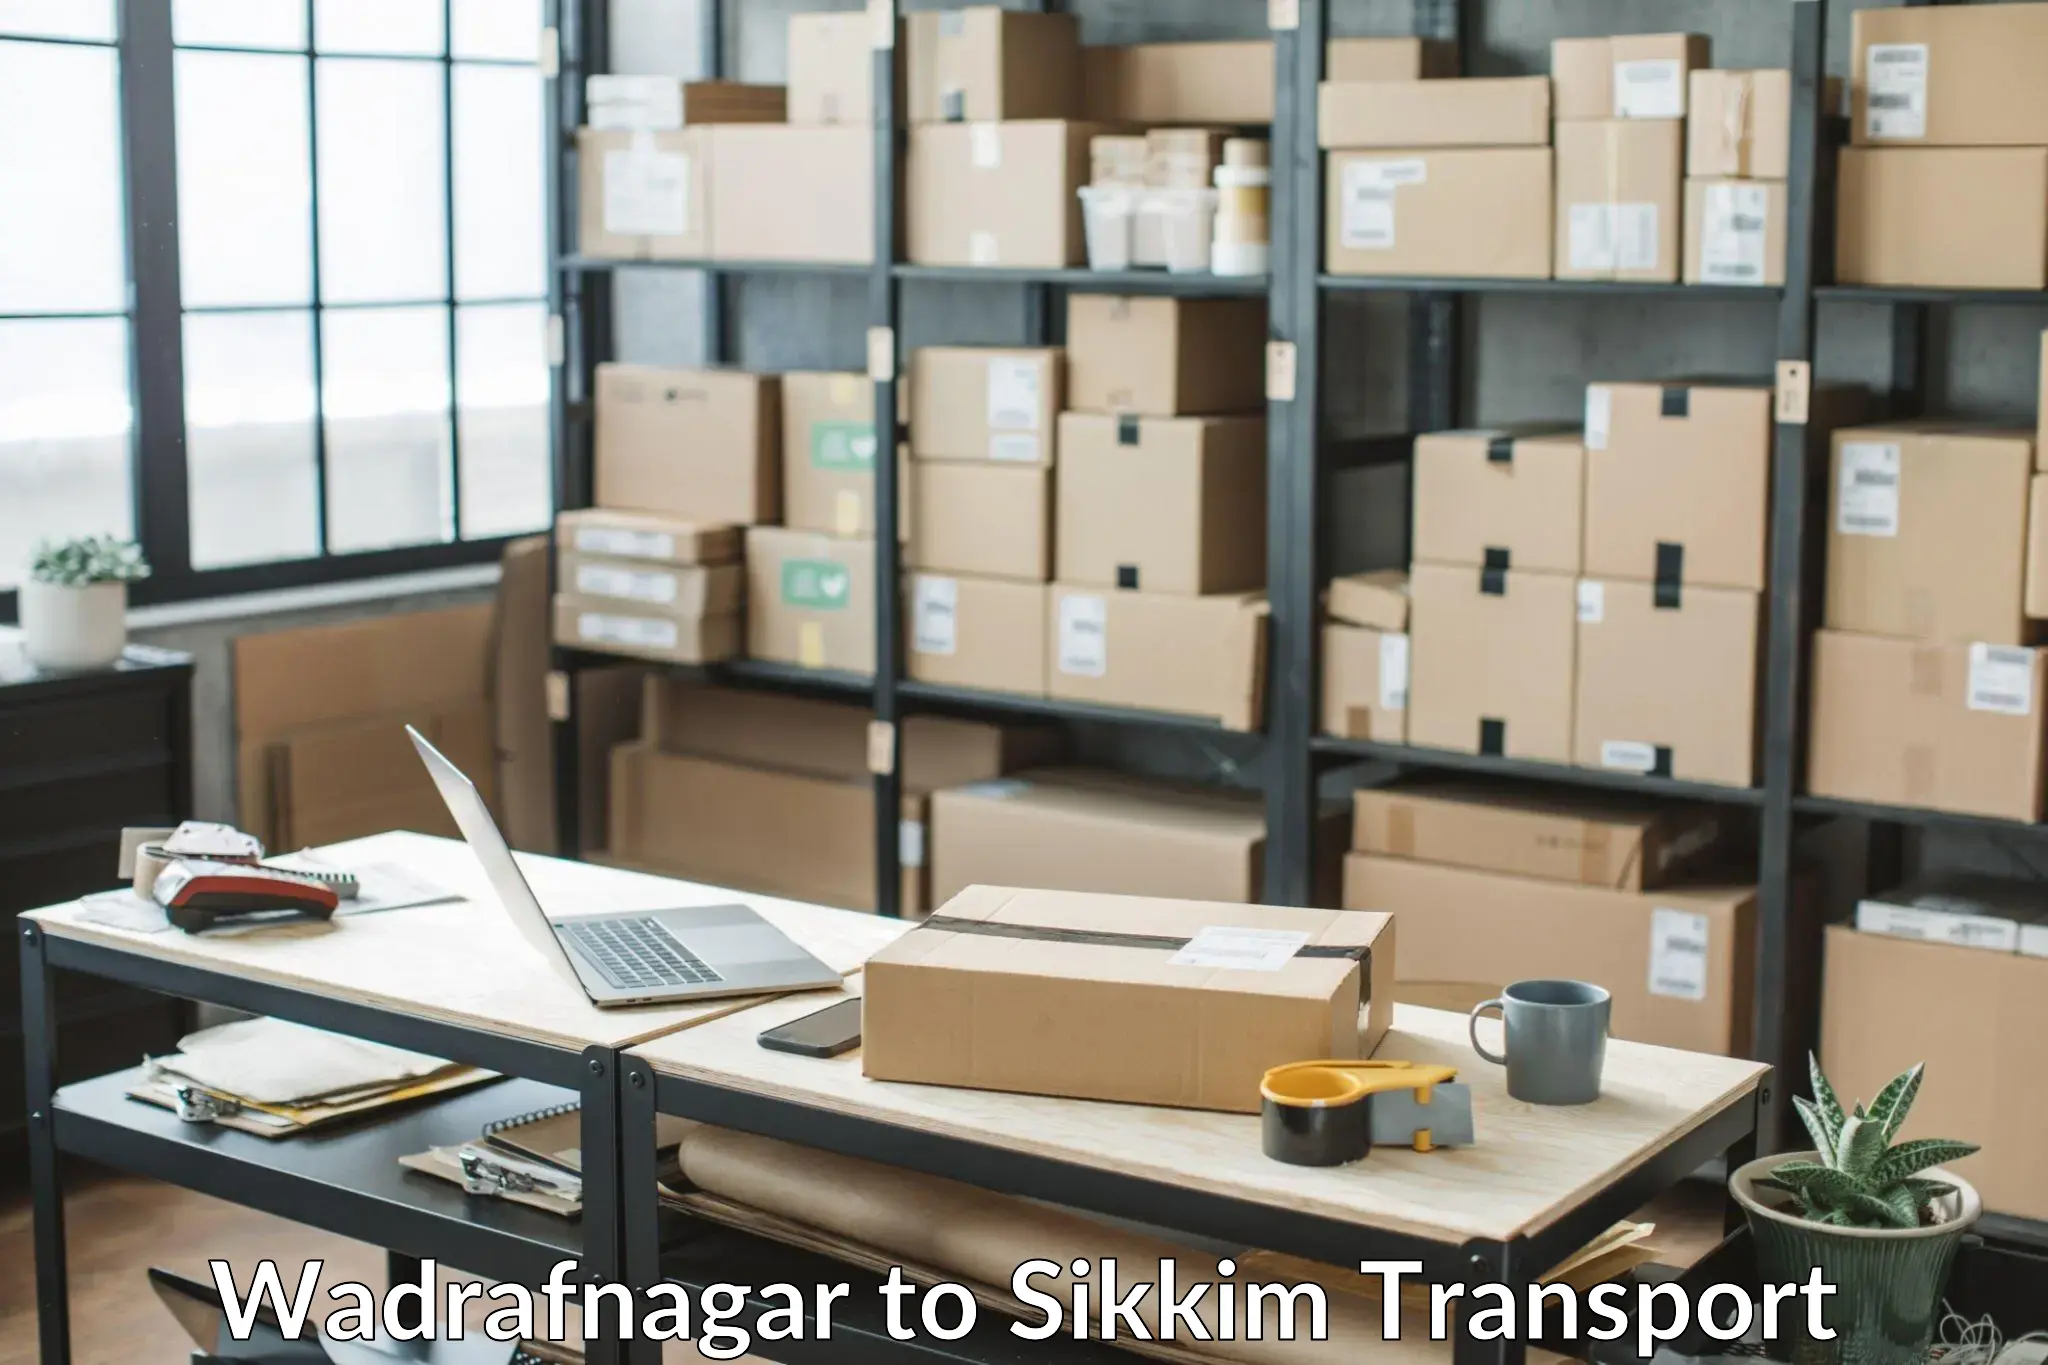 Container transport service Wadrafnagar to NIT Sikkim